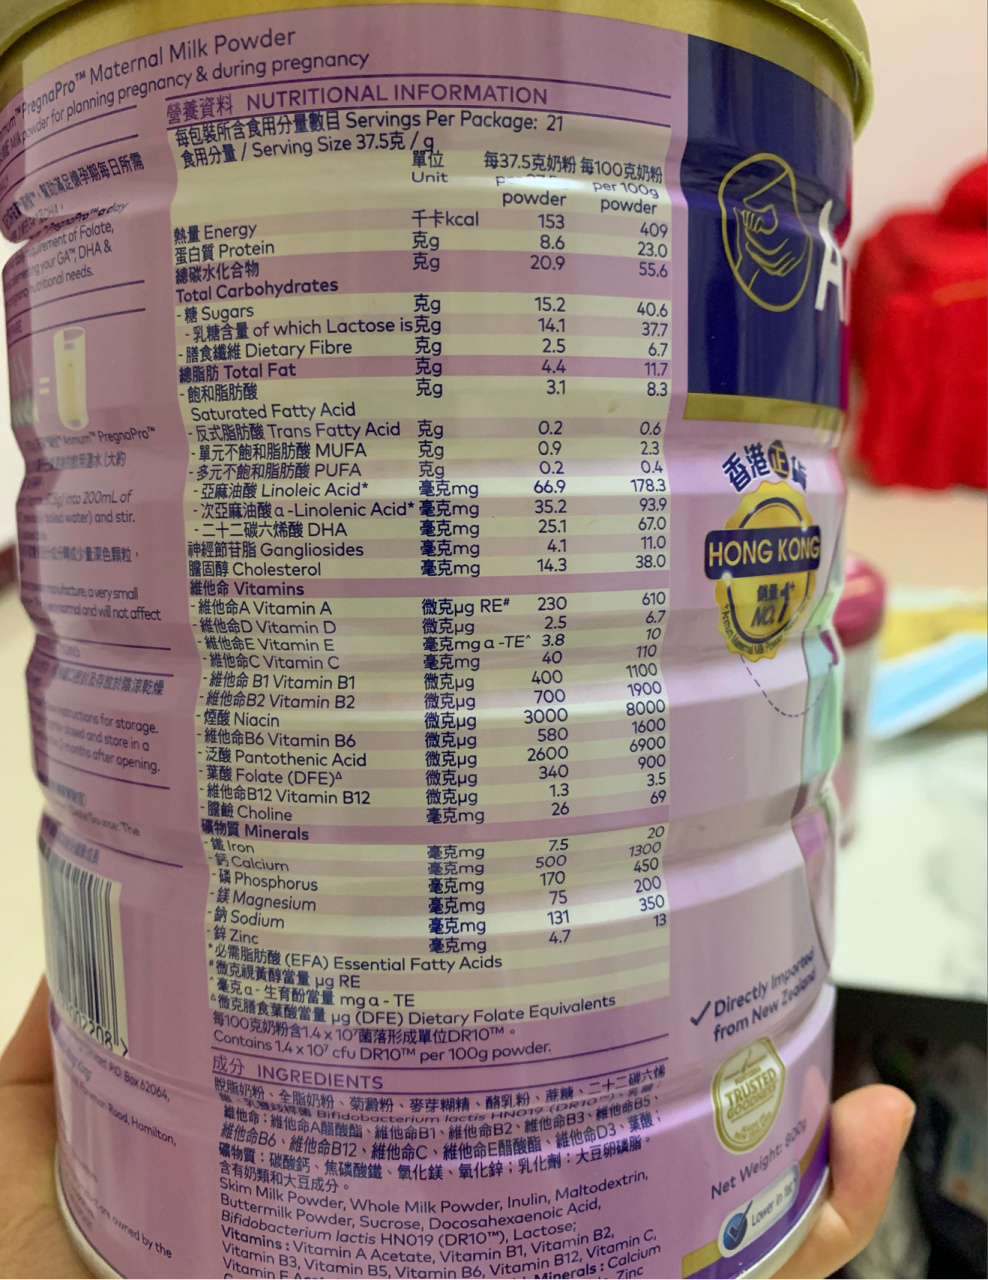 突然觉得君乐宝的孕妇奶粉好好喝呀92 左边是香港正货安满孕妇奶粉